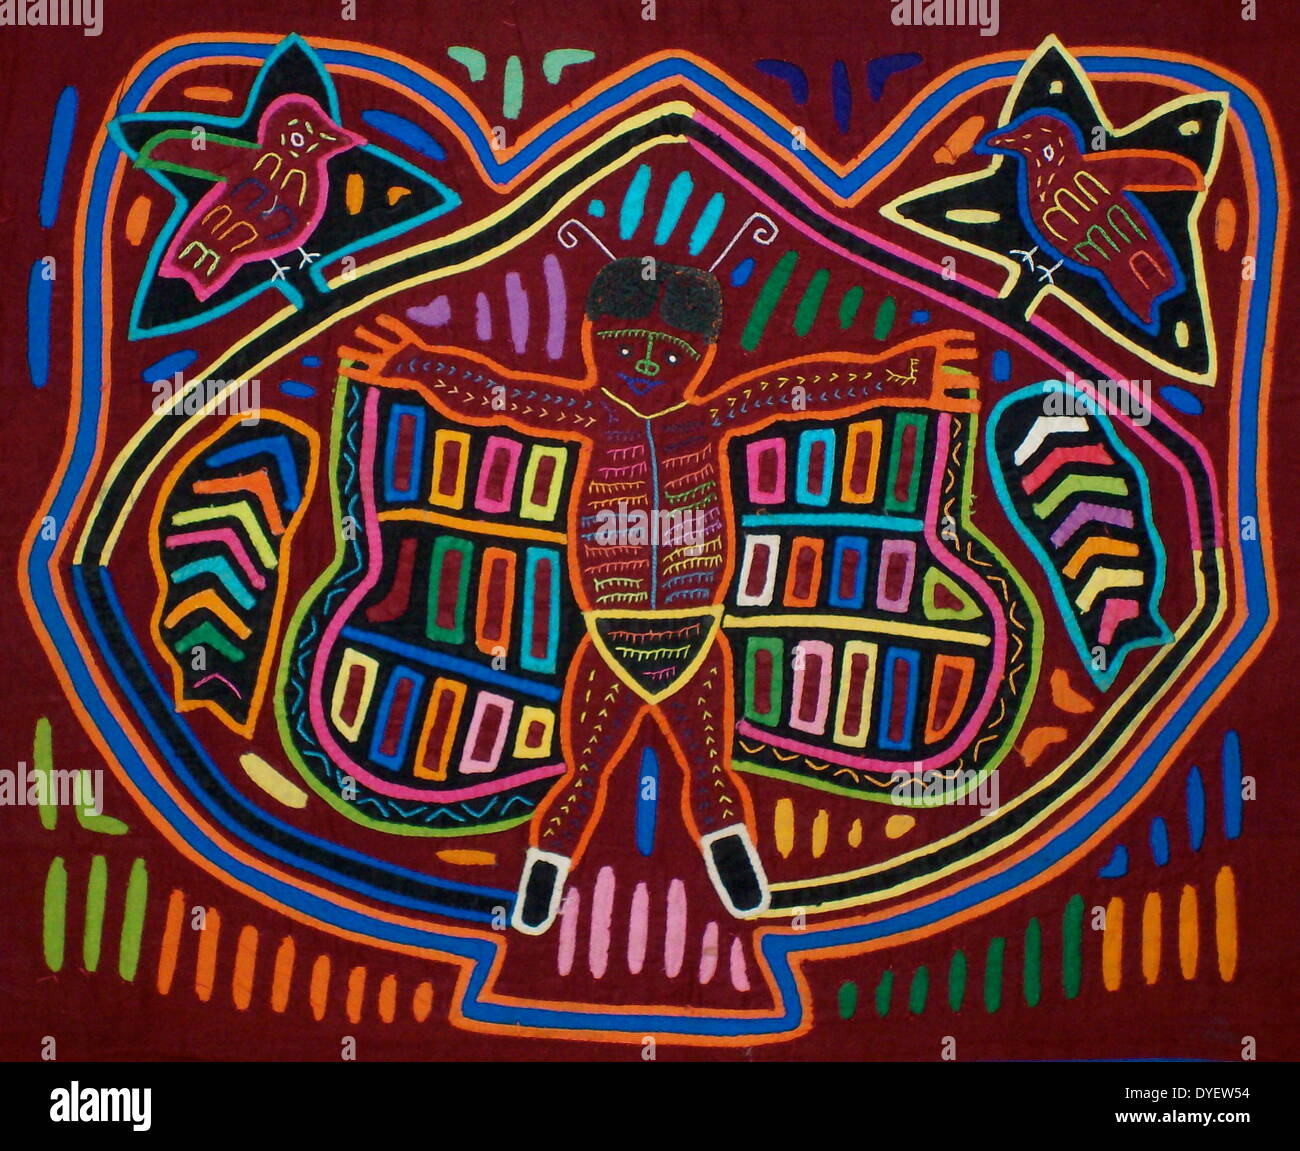 Mola da tessili Kuna artista indiano, raffigurante un moderno influenza sulla cultura Kuna. Dal San Blas arcipelago, Panama. Reverse applique design indossato sulla camicia femminile. Un super-eroe: Batman. Foto Stock